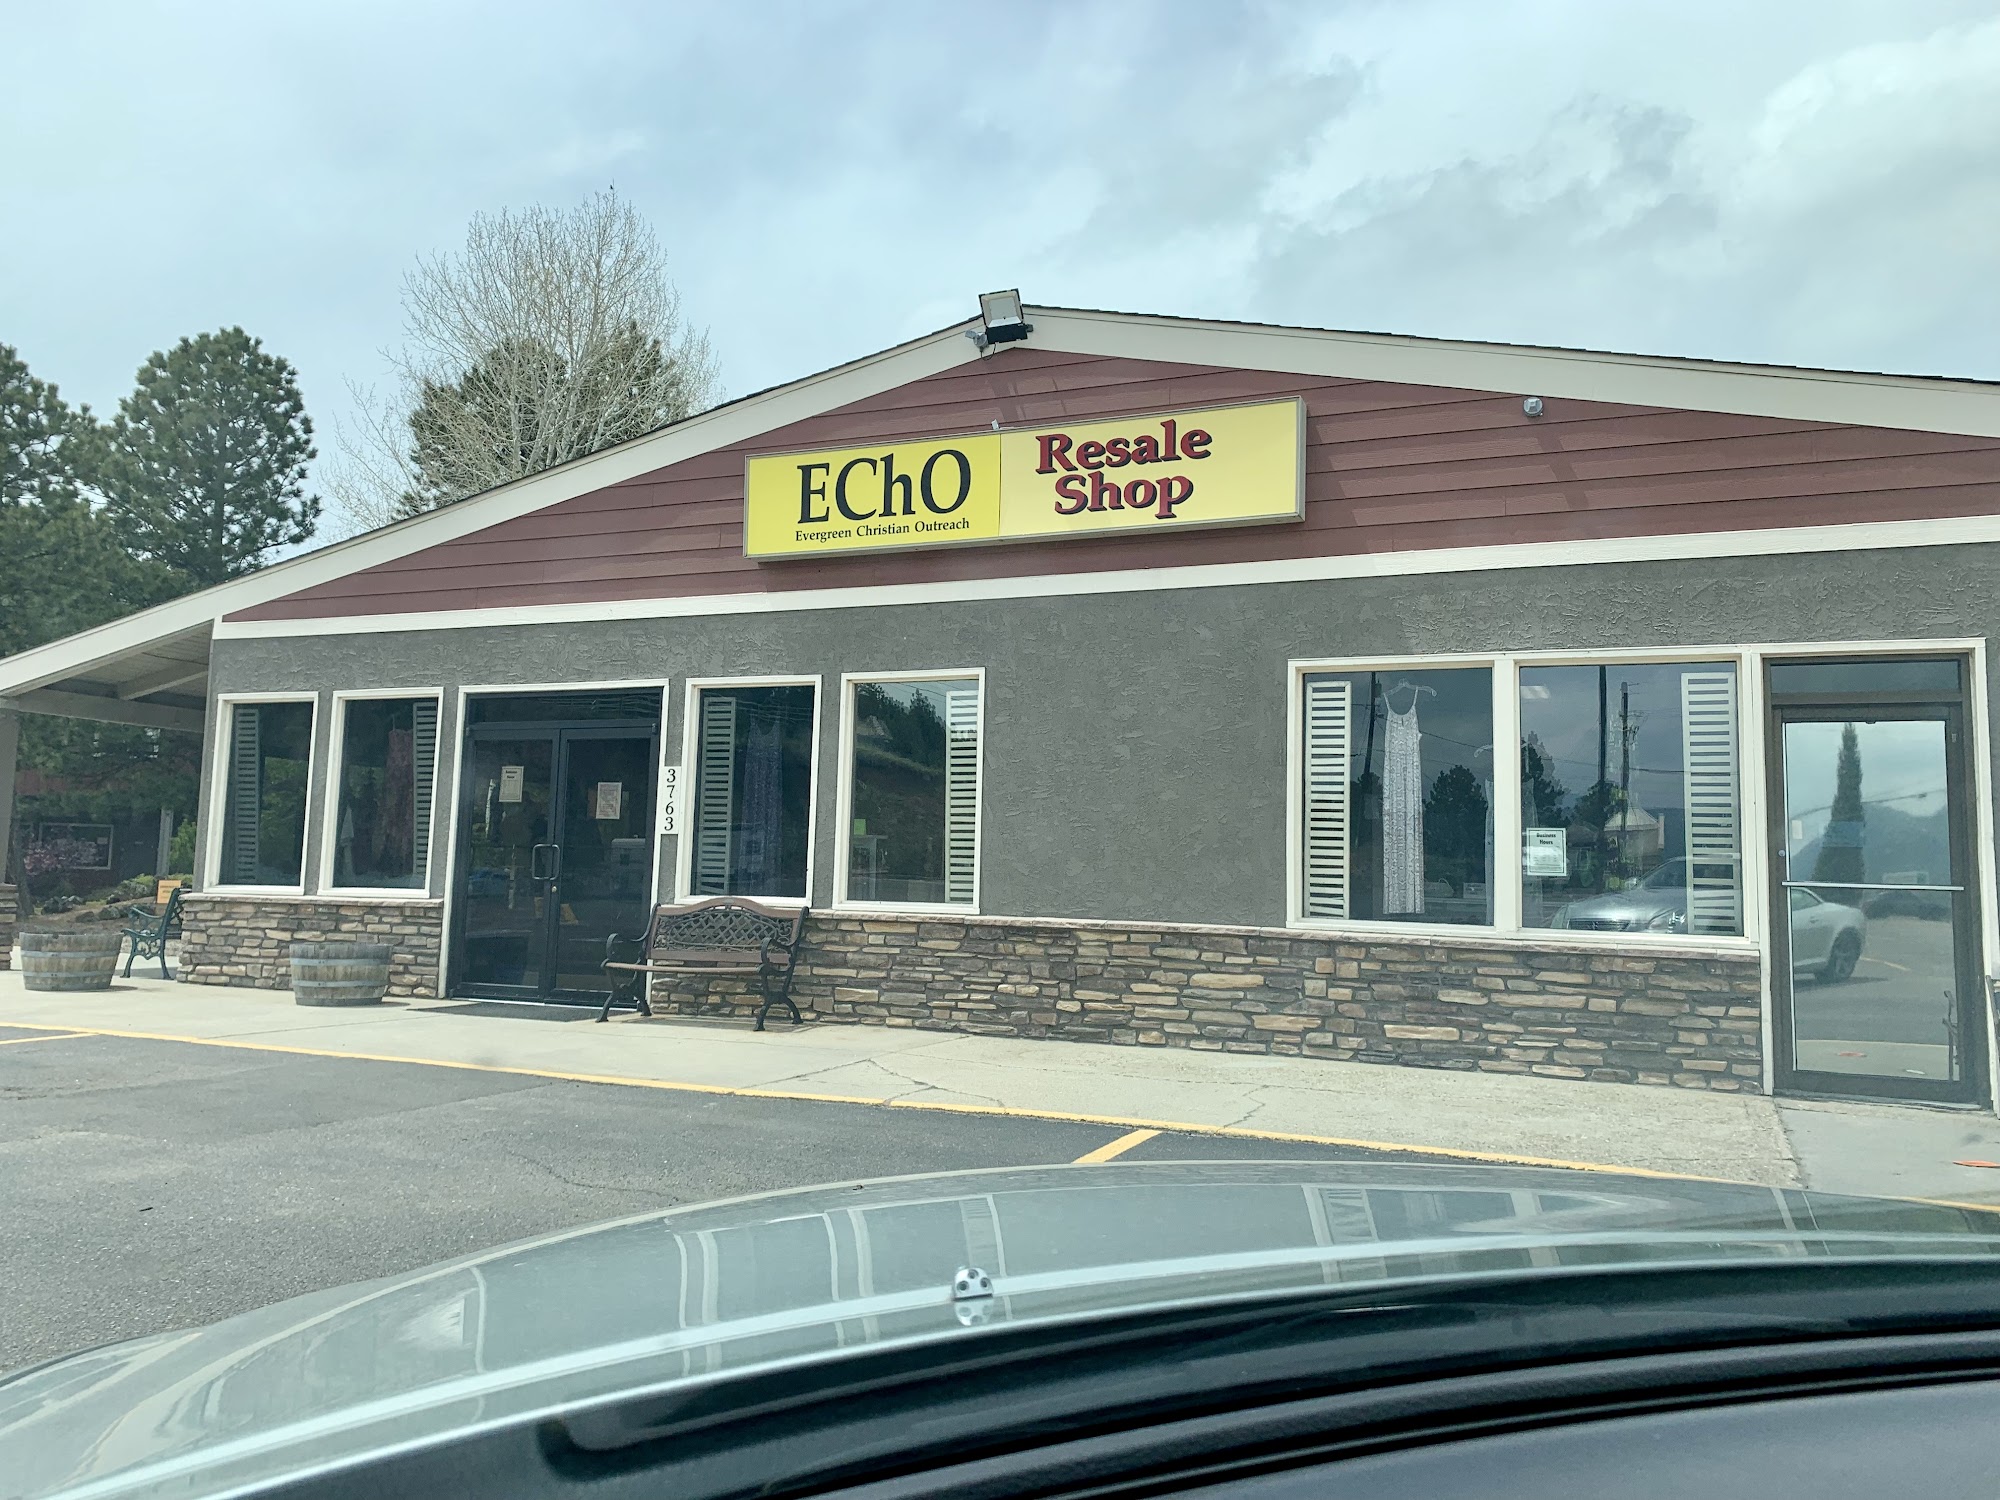 Echo Resale Shop